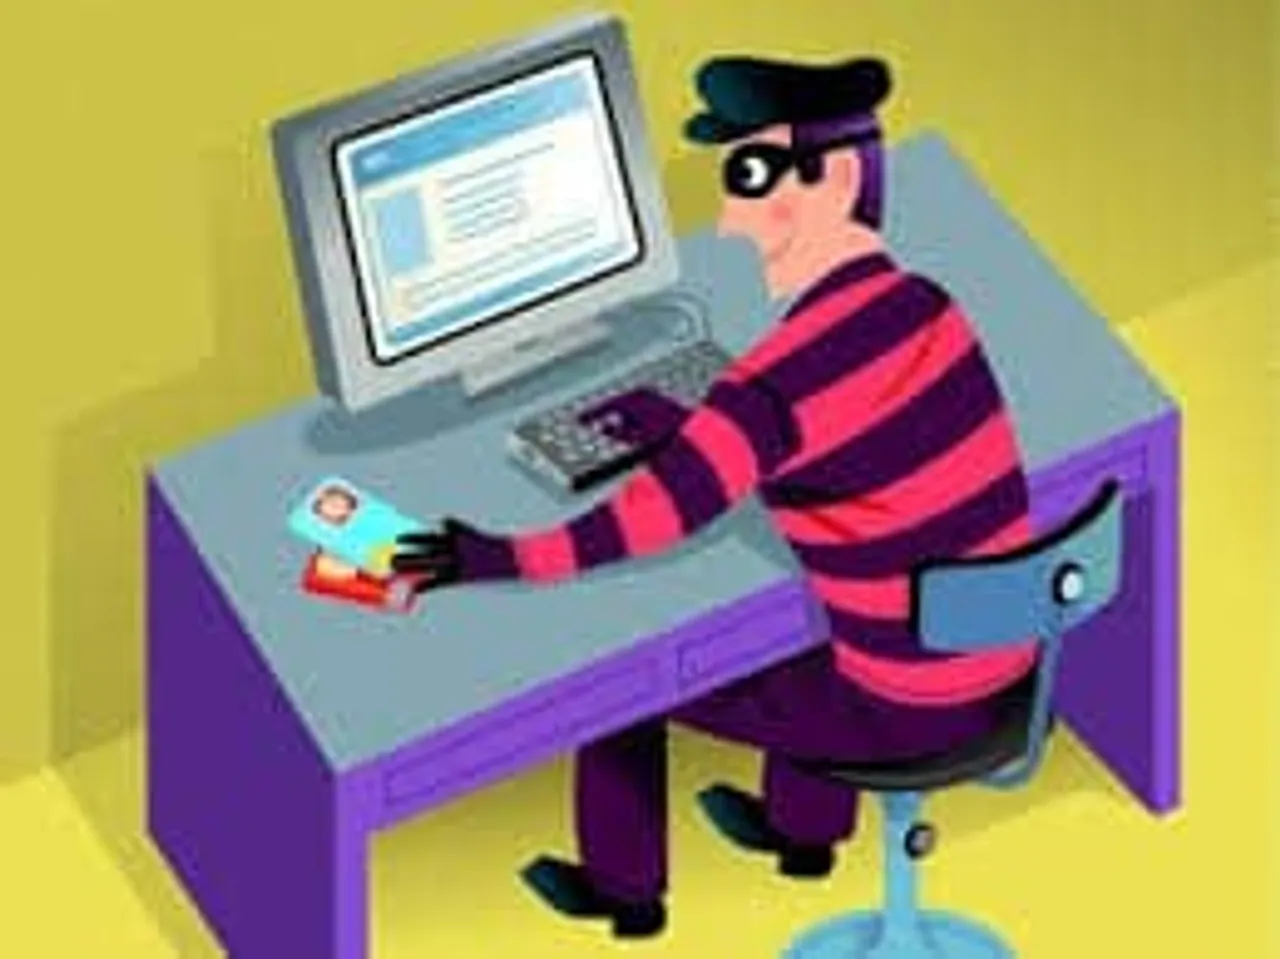 online theft